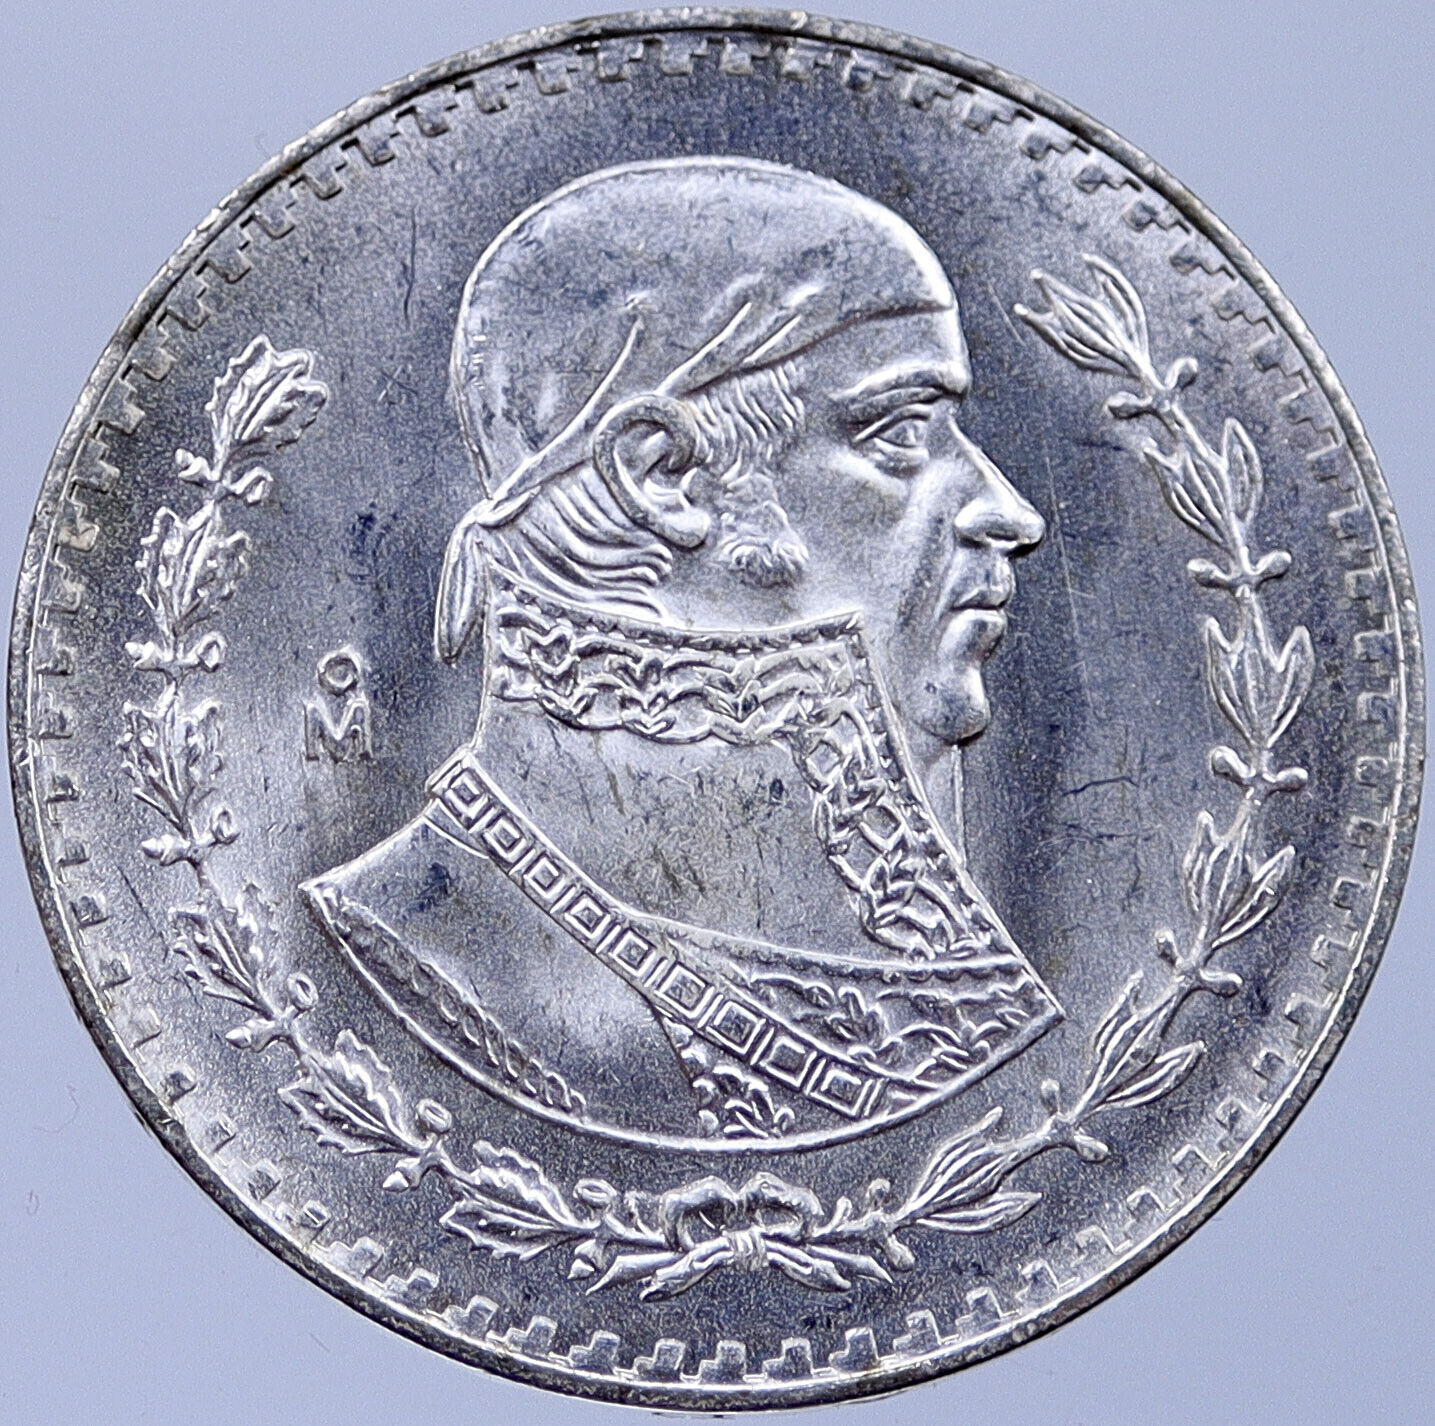 1964 MEXICO Independence War HERO Jose Maria Morelos Silver Peso Coin i119182